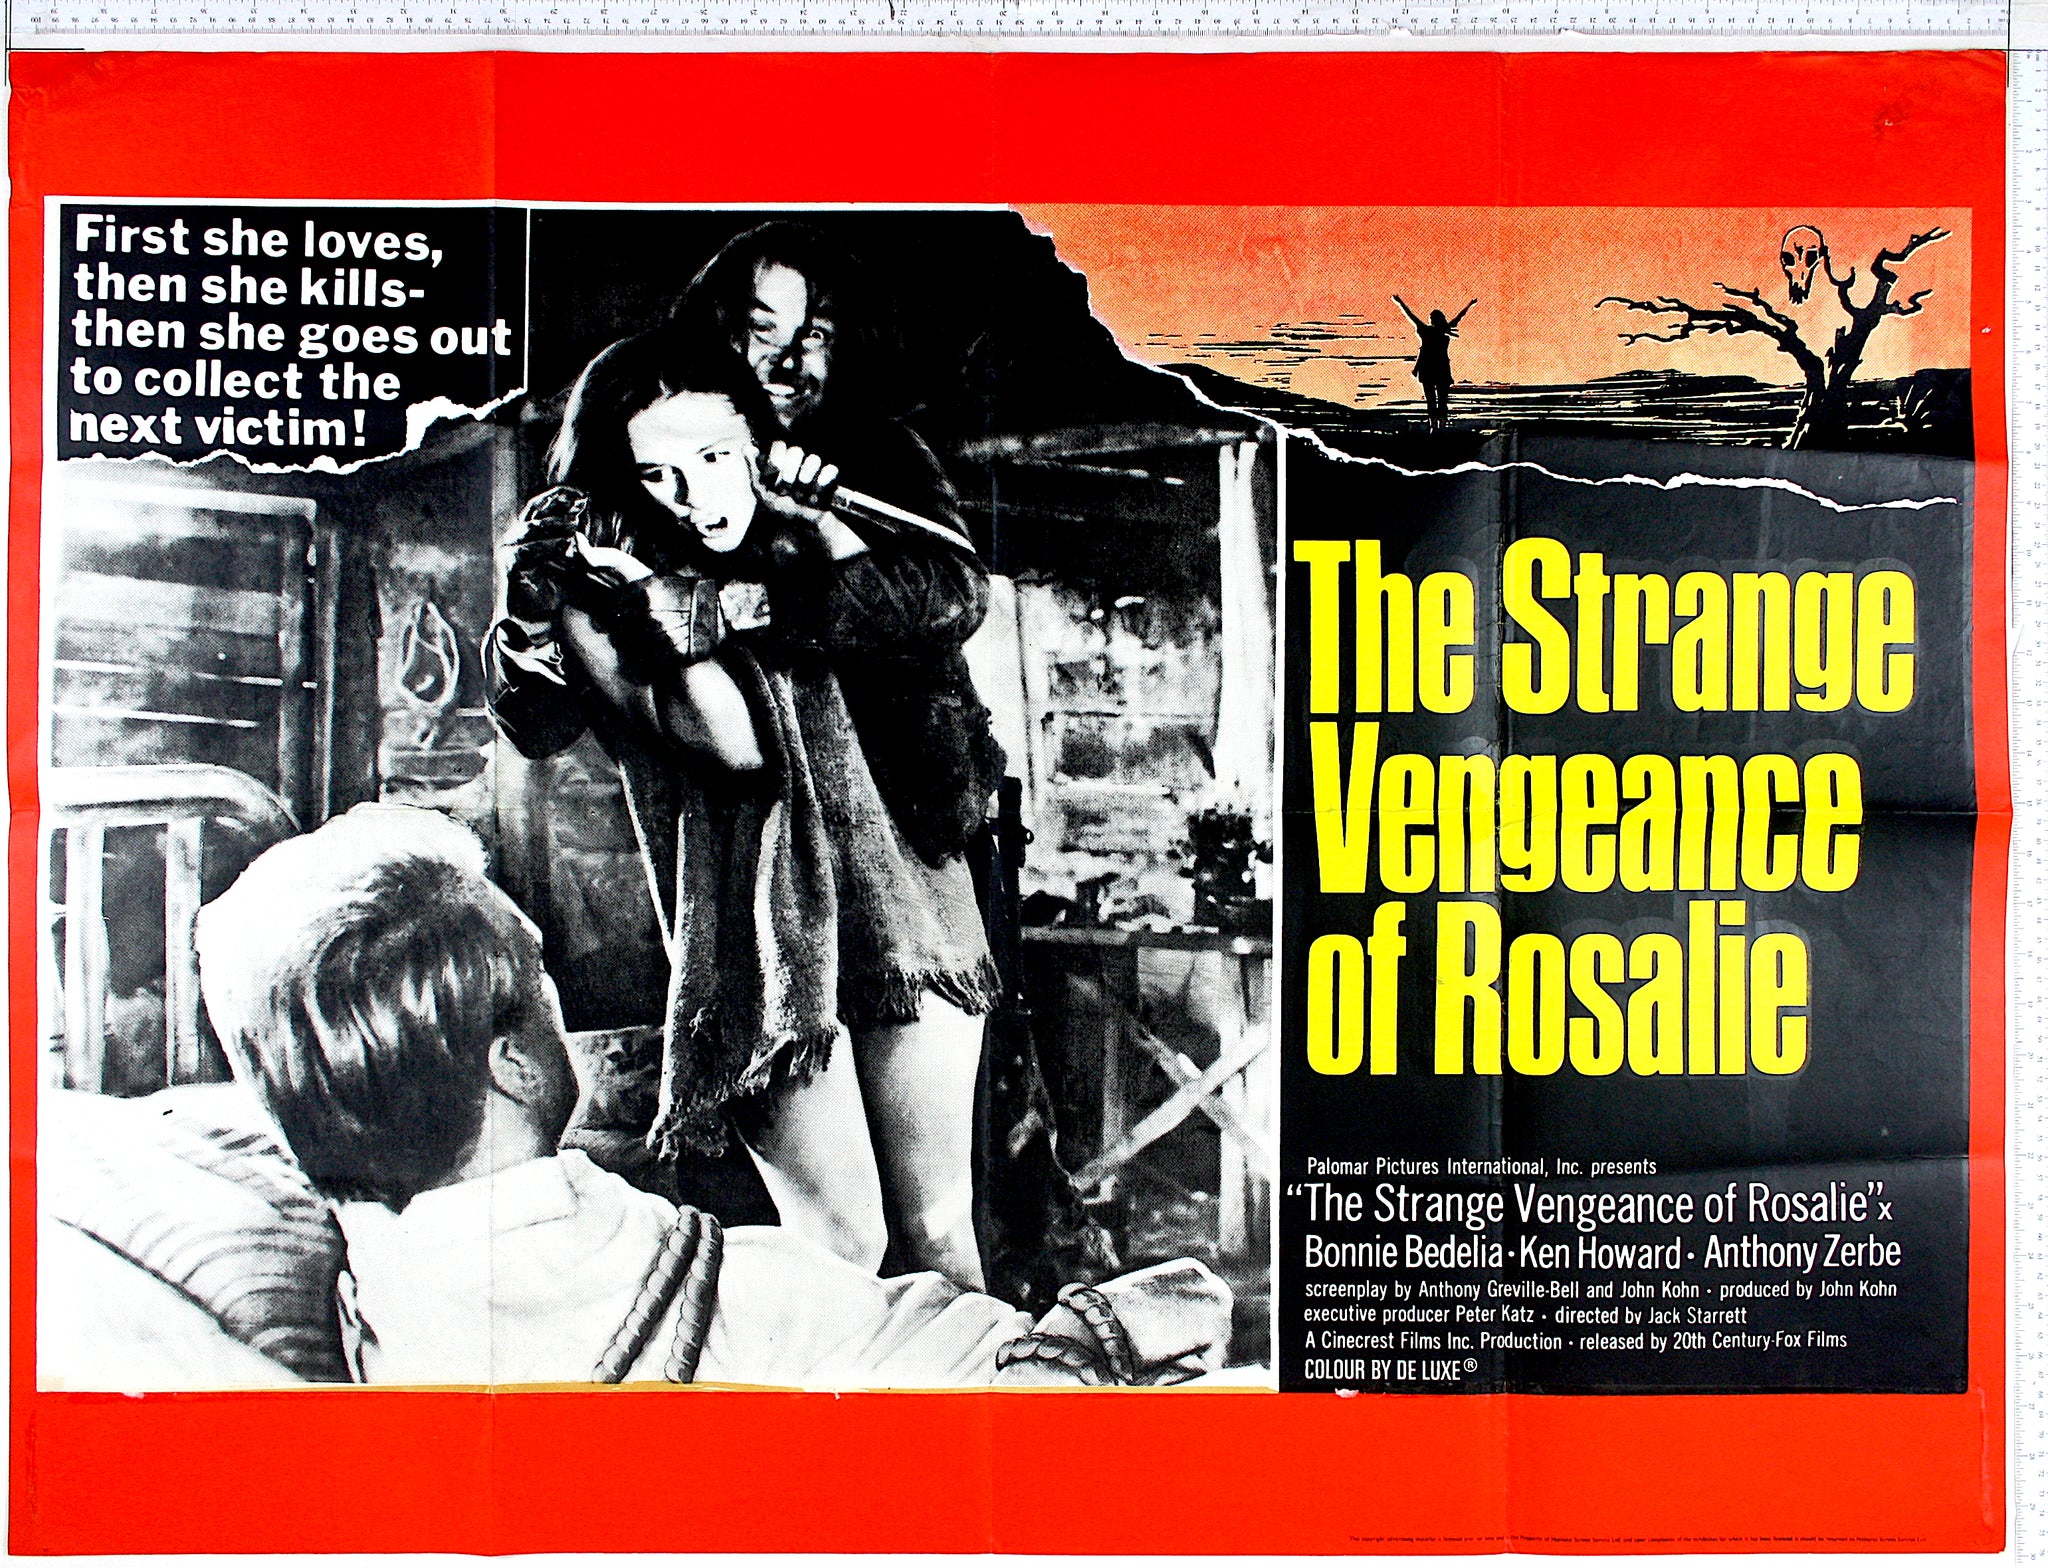 Strange Vengeance of Rosalie (1972) UK Quad Poster